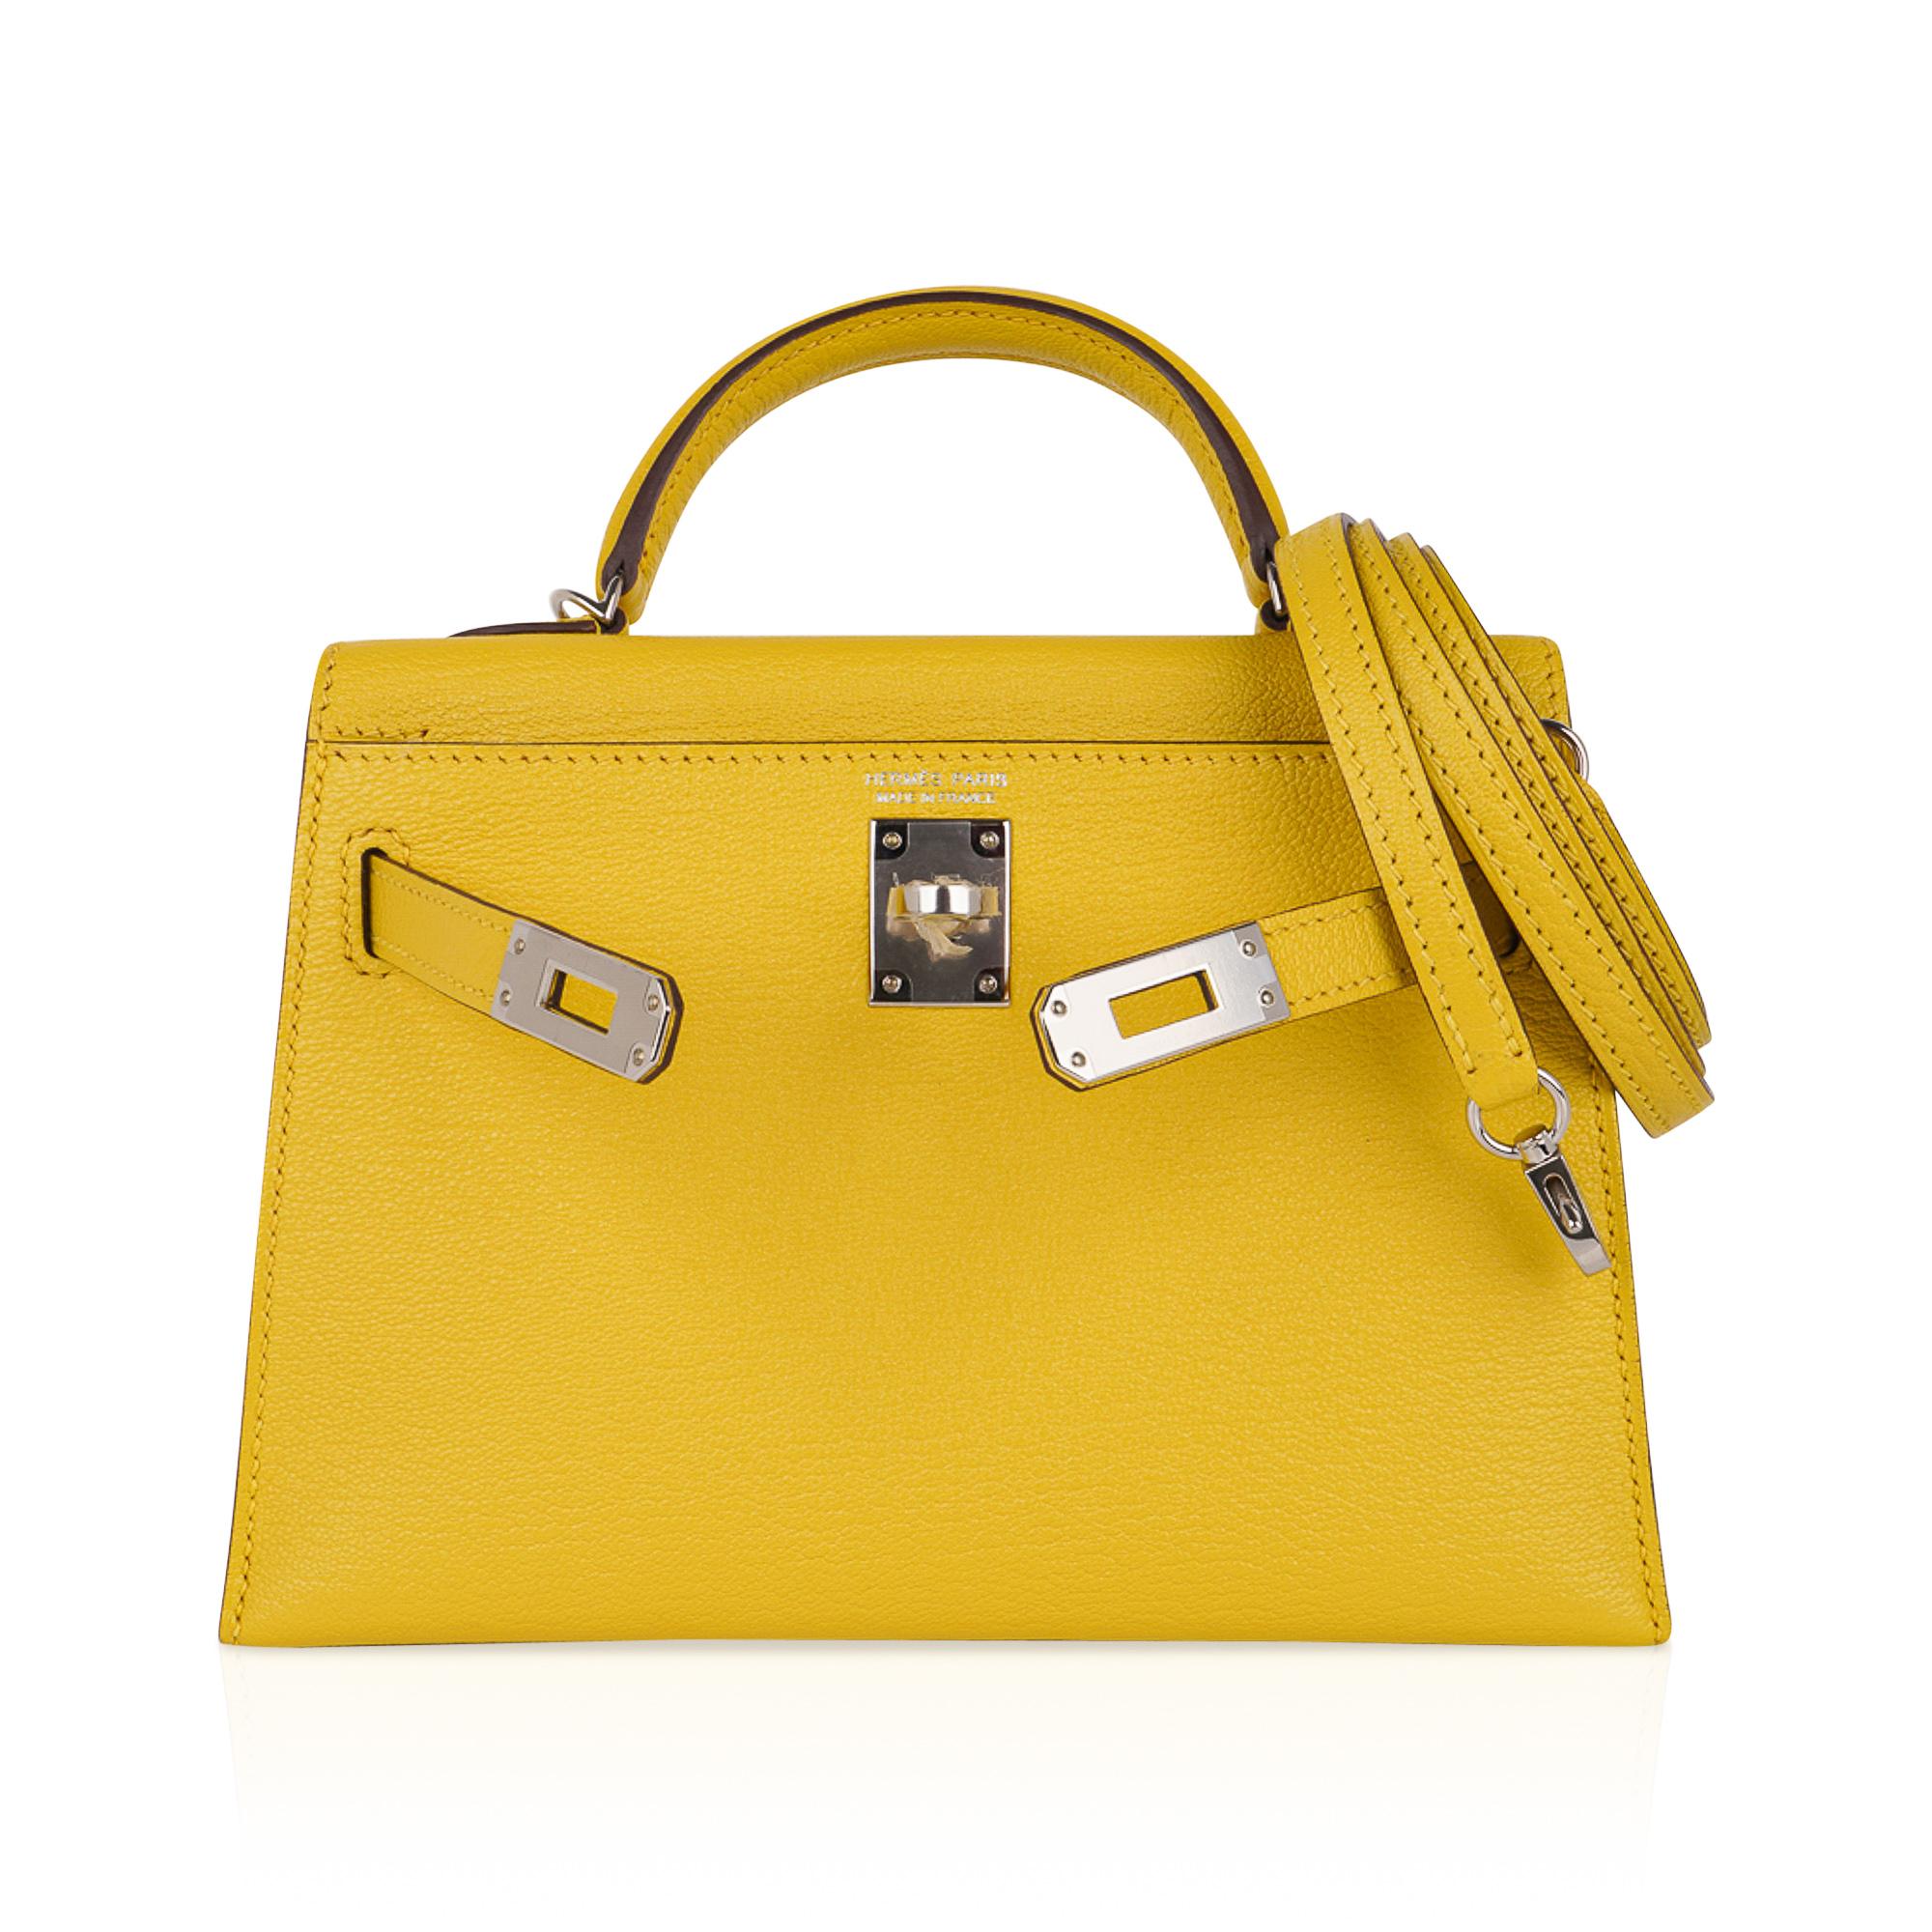 Hermès Kelly 20 Mini Sellier Tasche Jaune de Naples Verso Chevre Palladium (Gelb)